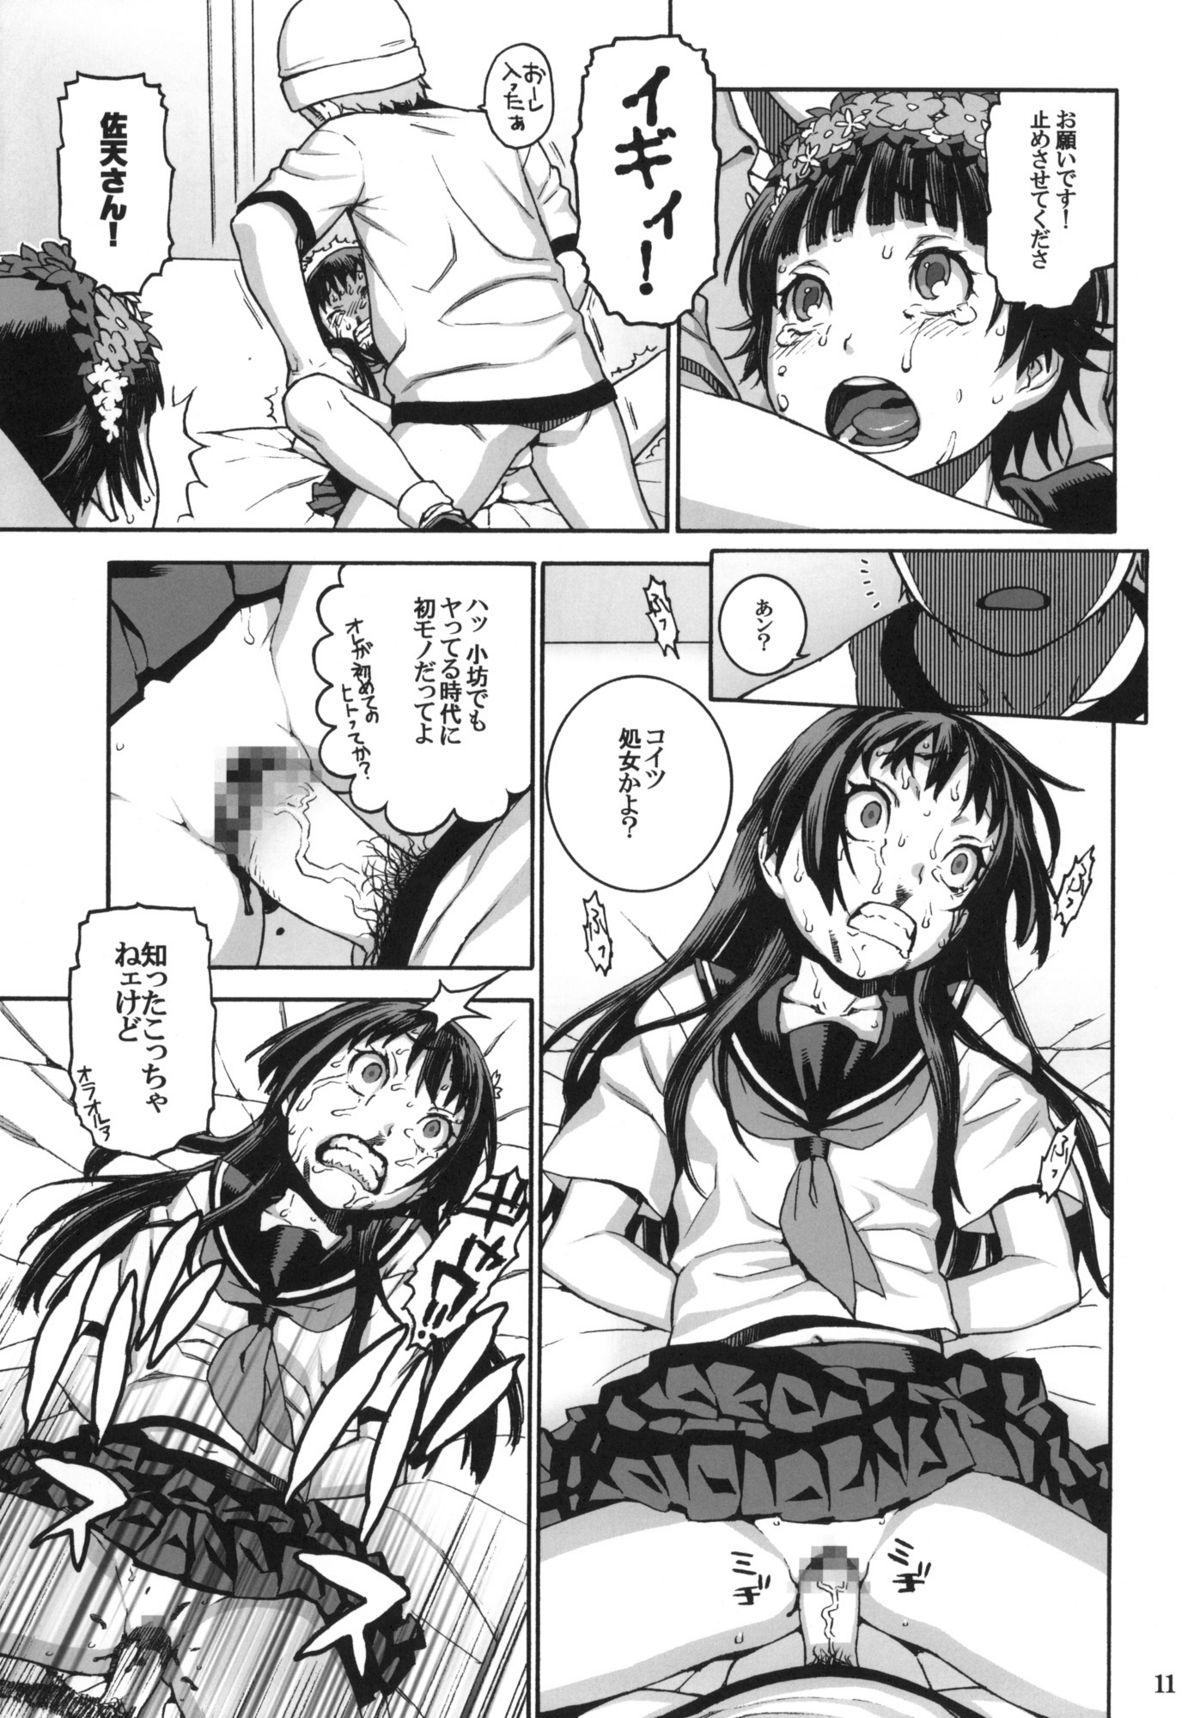 Pau Grande Toaru Jiken no Heroines - Toaru kagaku no railgun Porn Sluts - Page 10